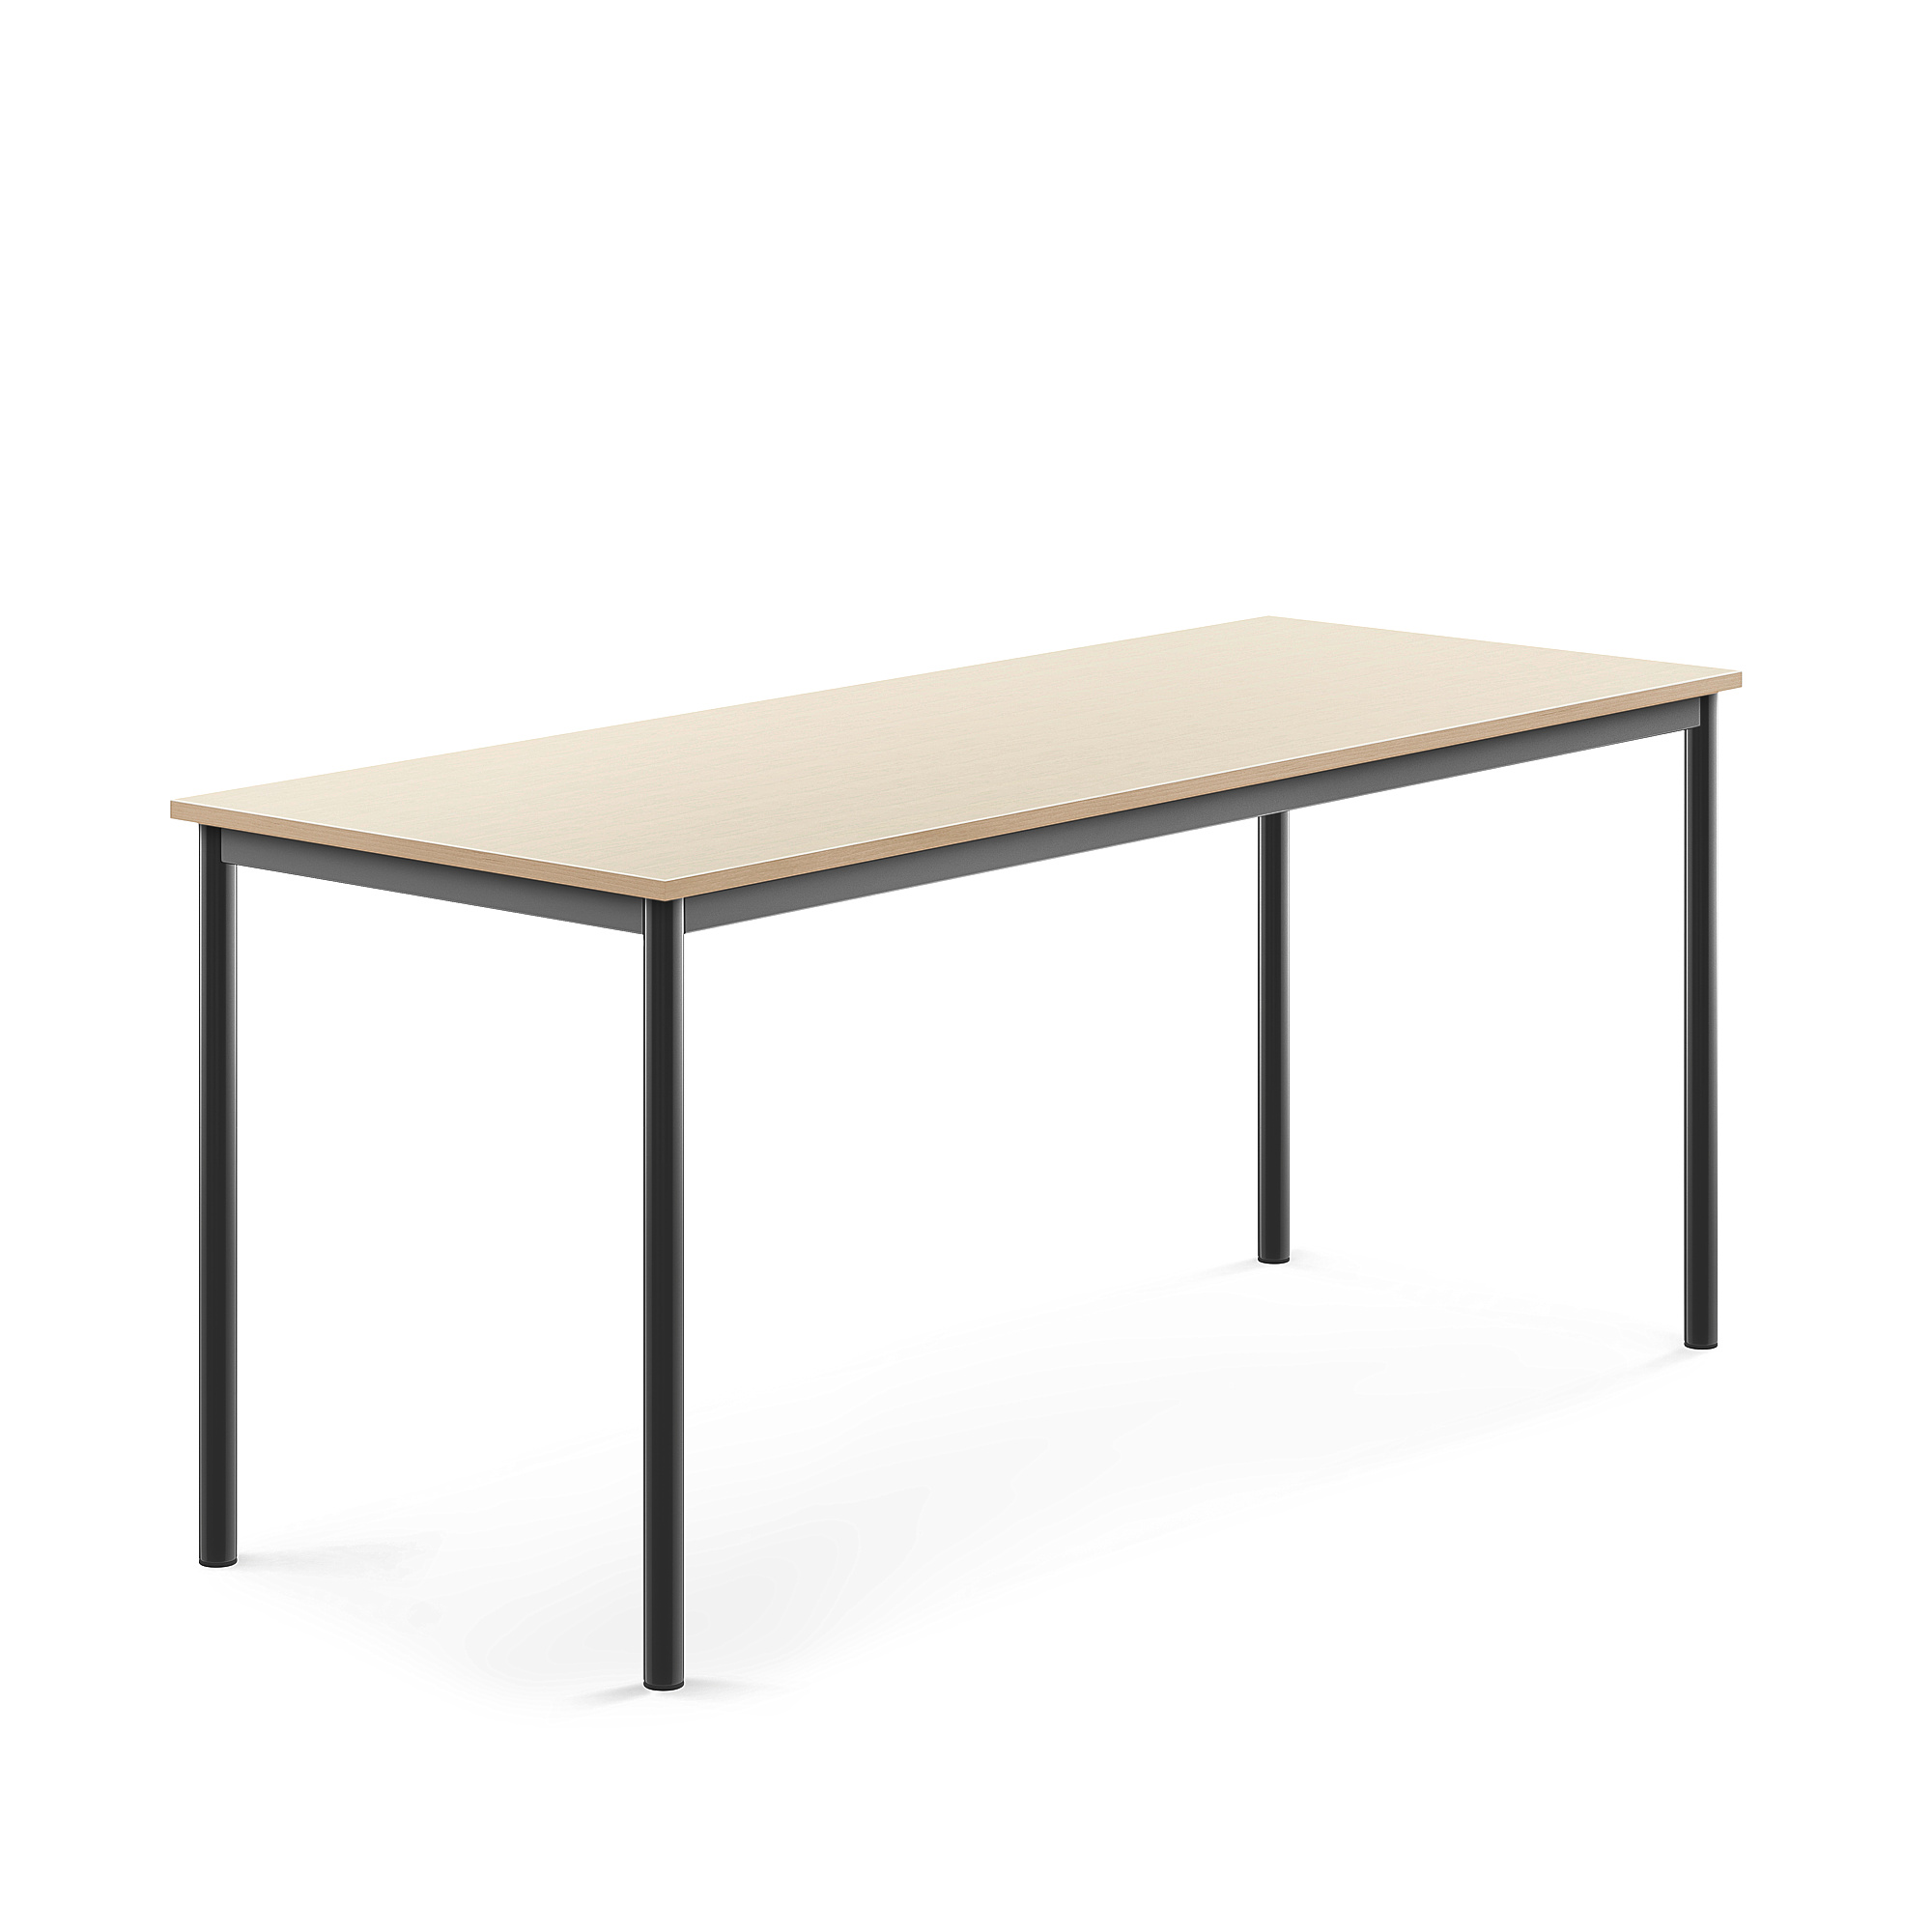 Stůl SONITUS, 1800x700x760 mm, antracitově šedé nohy, HPL deska tlumící hluk, bříza